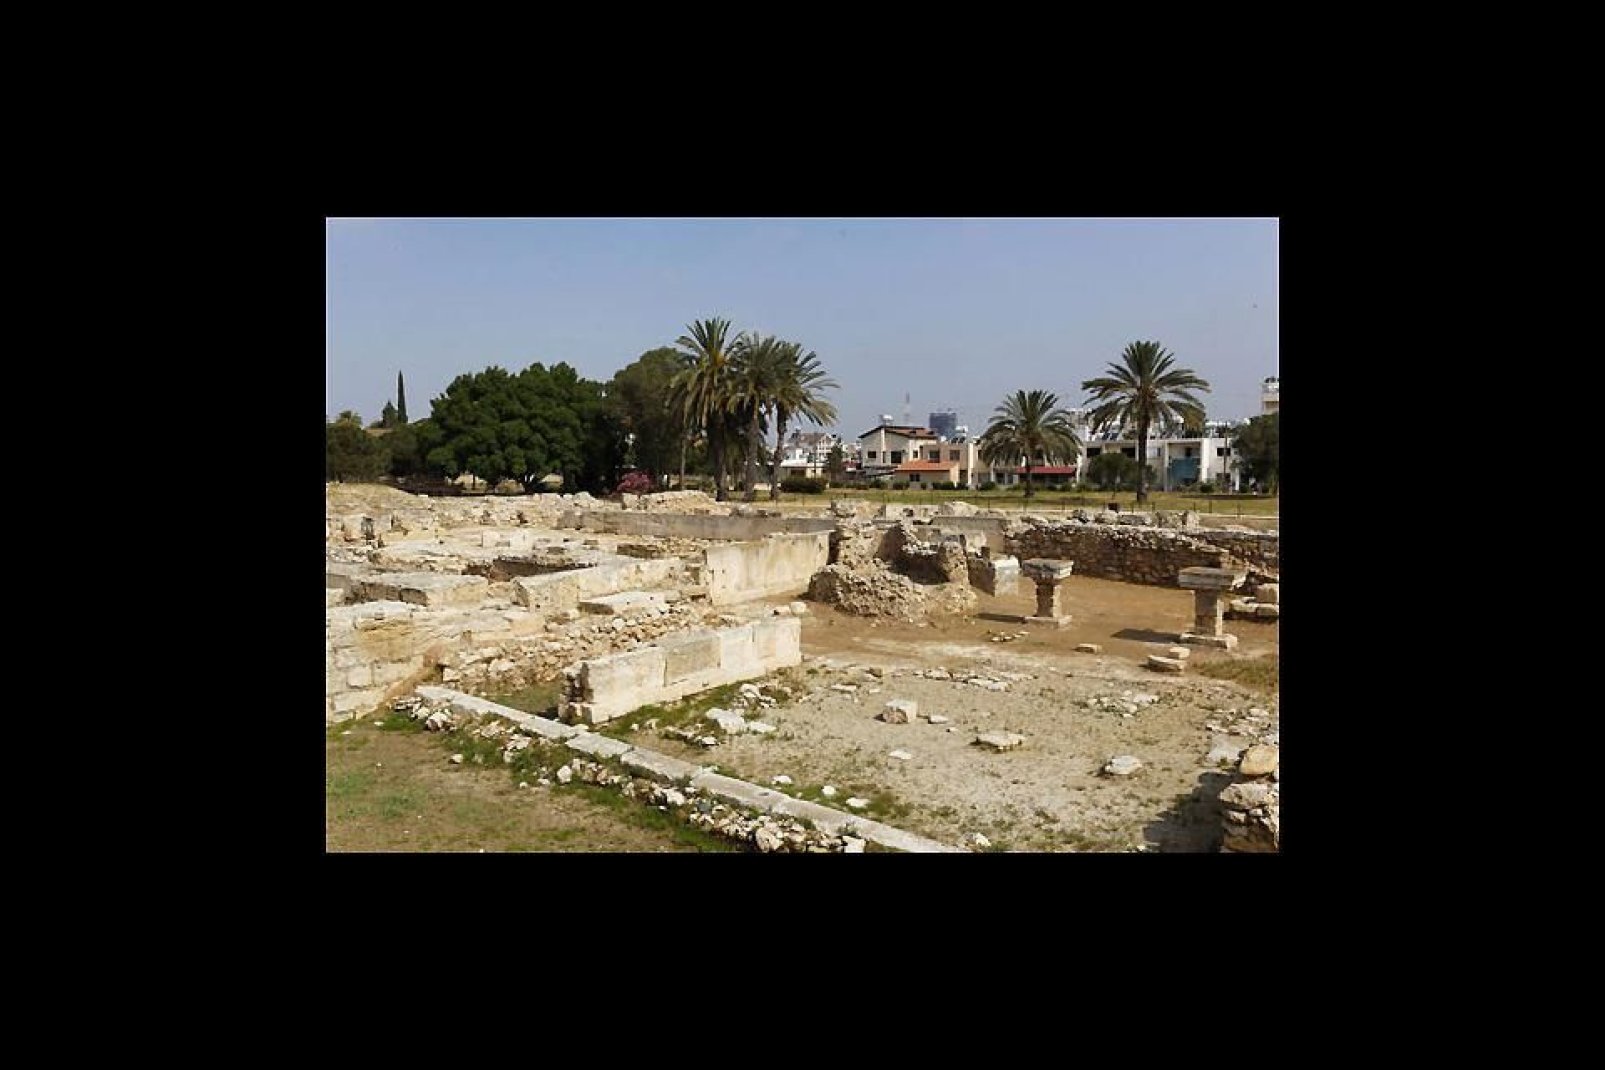 Il sito archelogico dell'antica città di Kition mostra le vestigia di un'epoca passata.